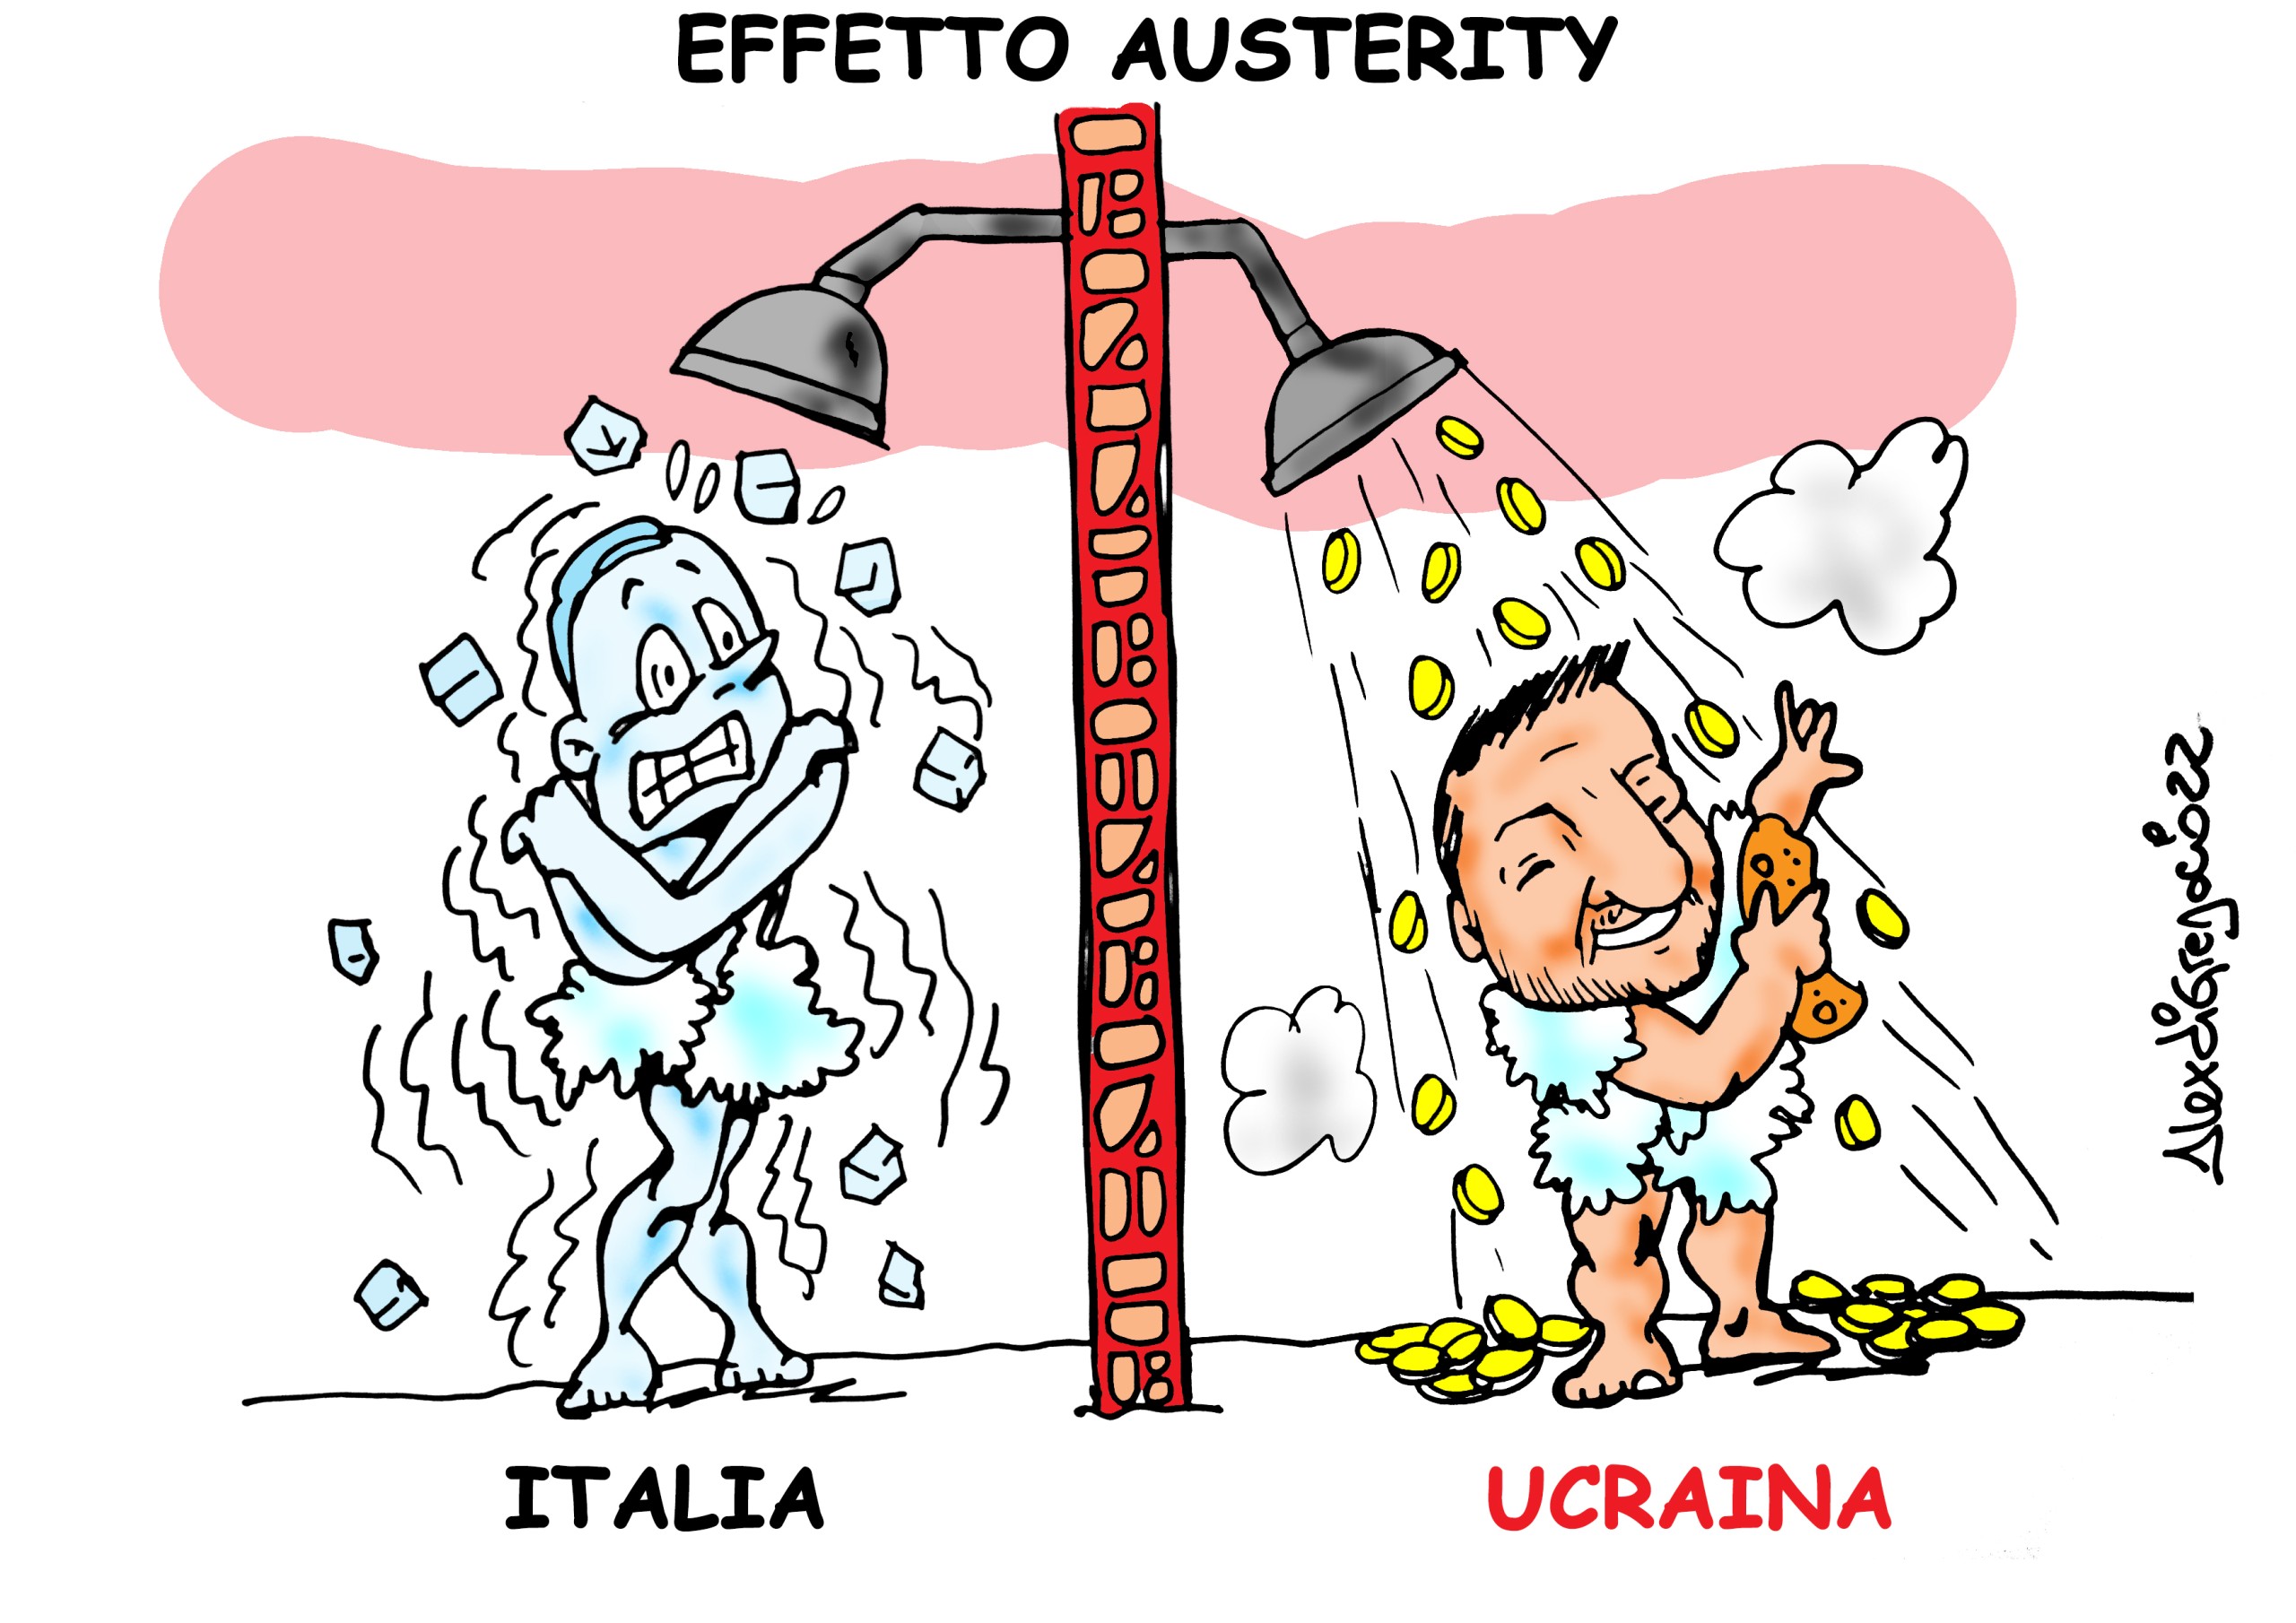 Effetto austerity